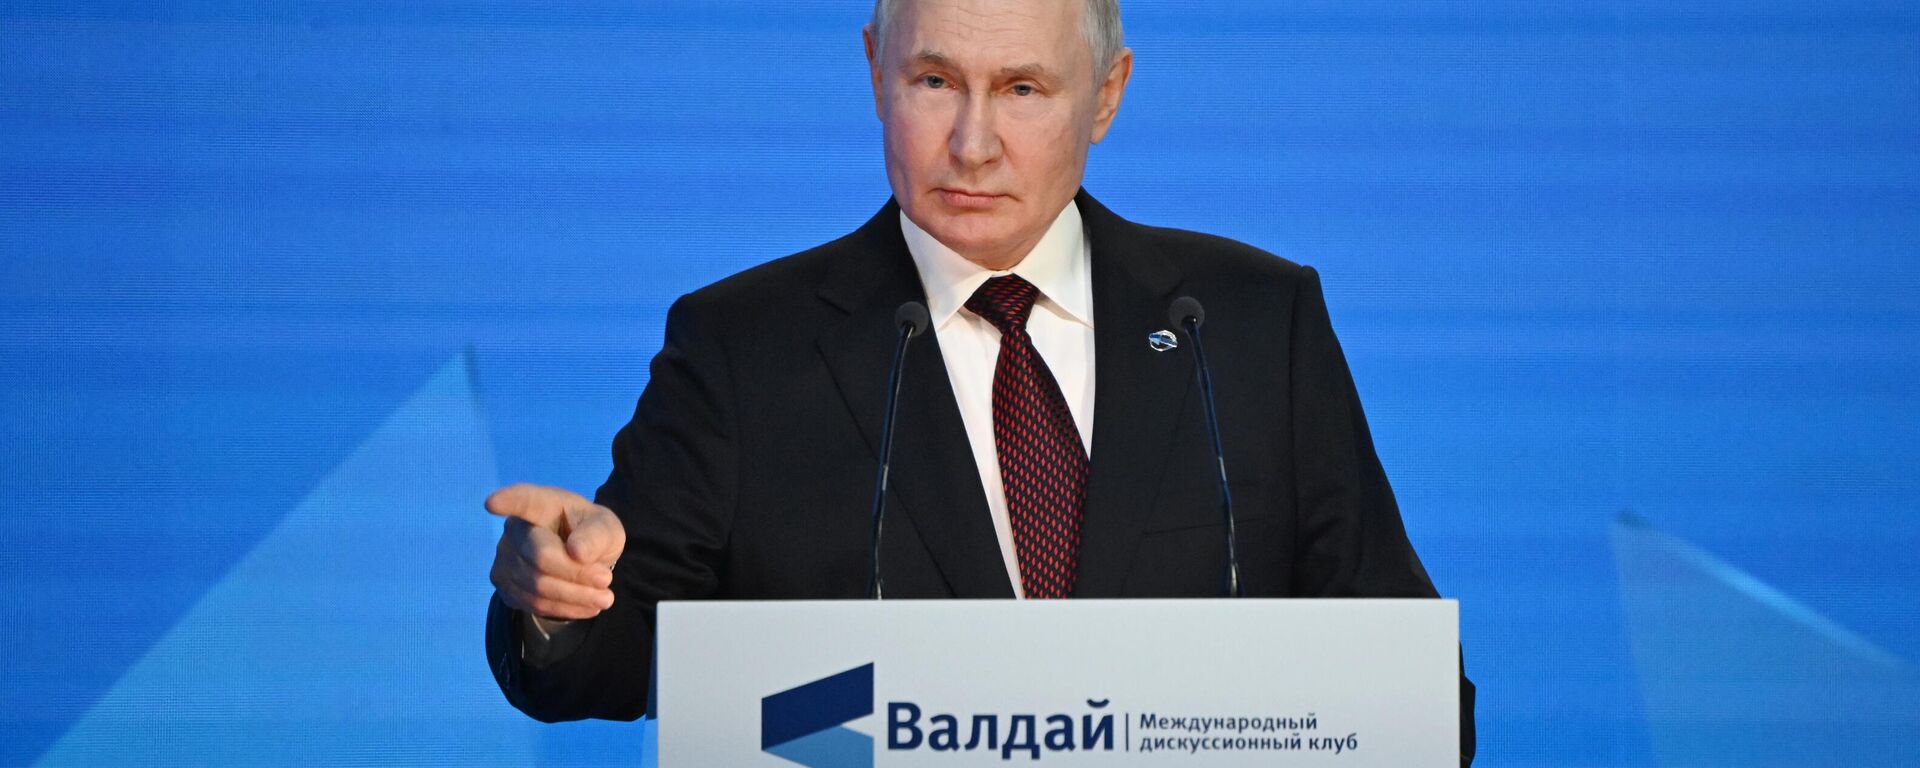 O presidente russo, Vladimir Putin, durante discurso no evento Clube Valdai de Discussões Internacionais. Sochi, Rússia, 5 de outubro de 2023 - Sputnik Brasil, 1920, 09.10.2023